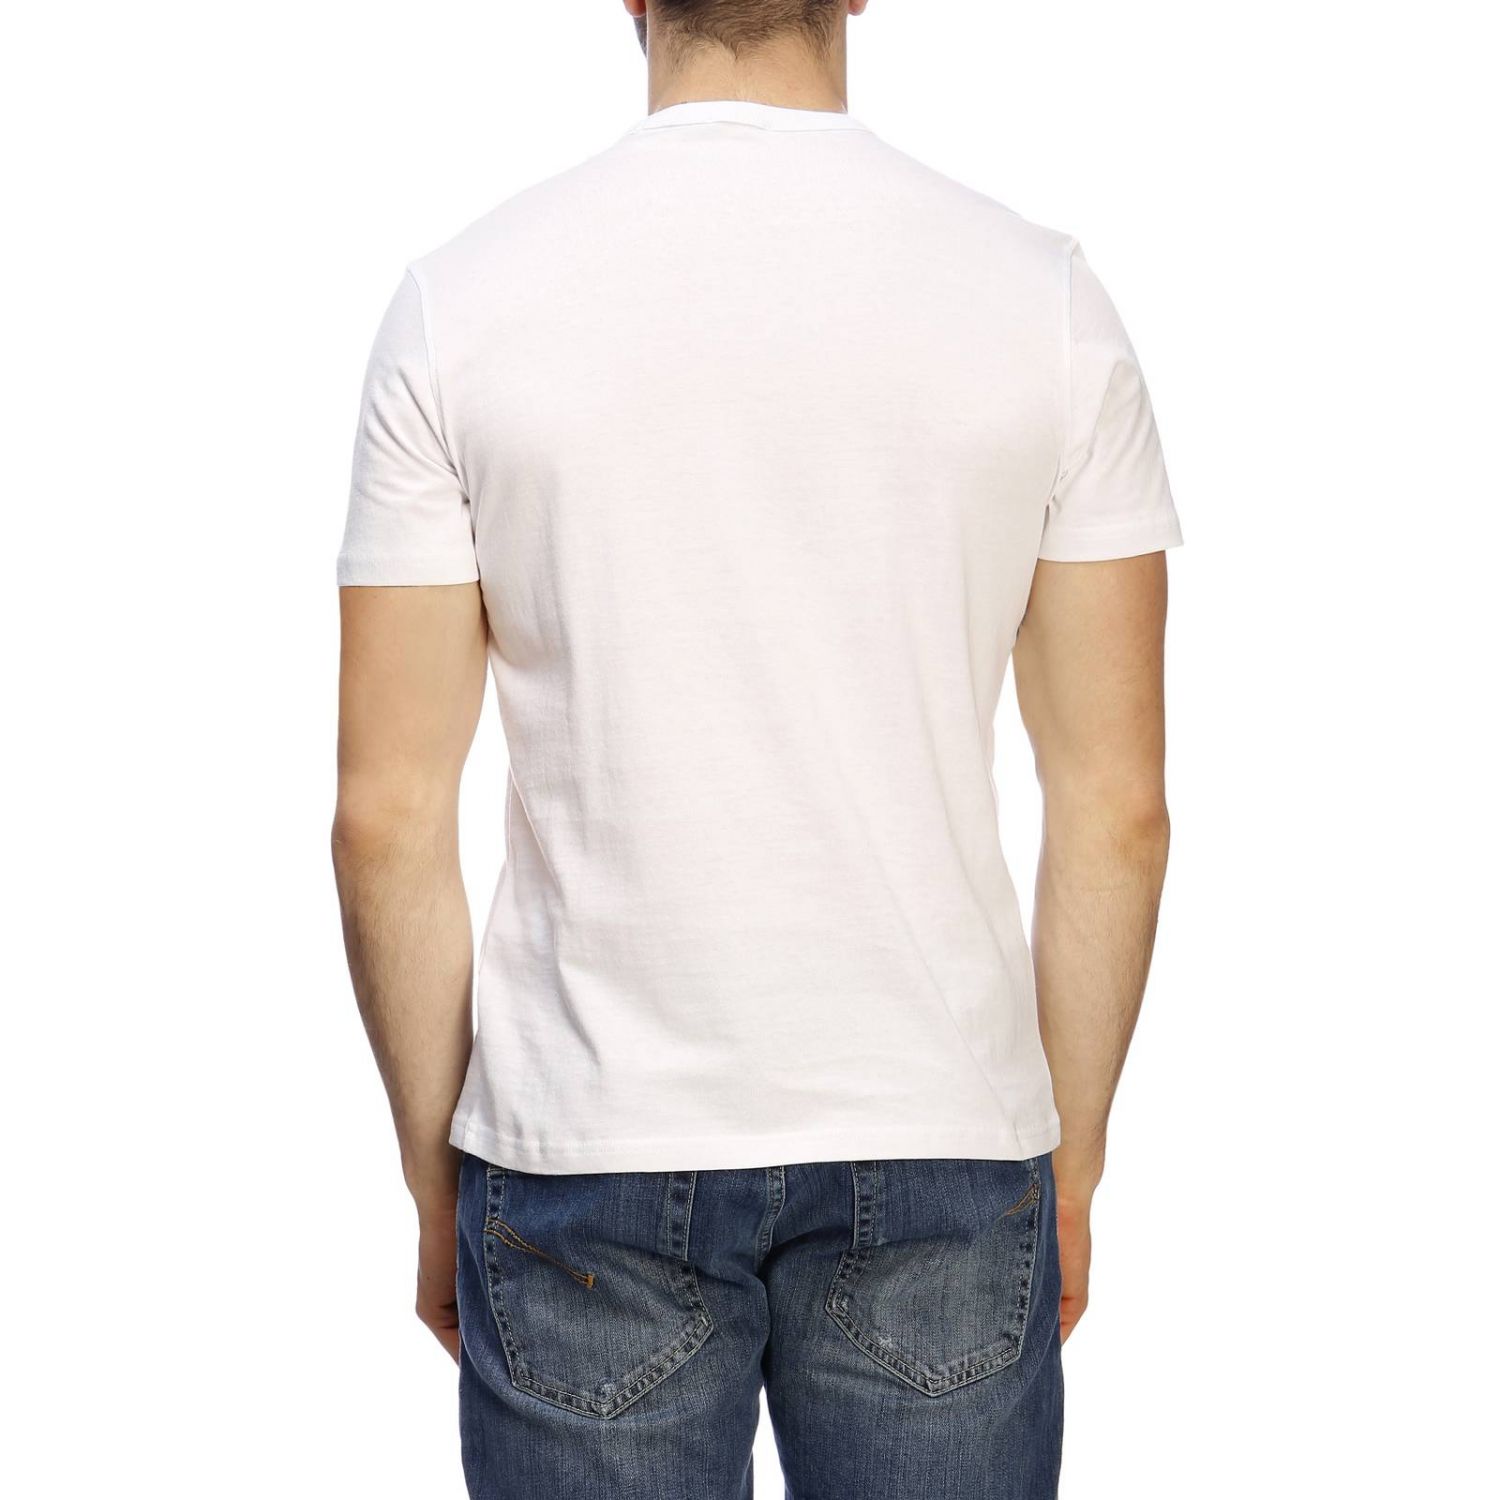 Belstaff Outlet: t-shirt for man - White | Belstaff t-shirt 71140225 ...